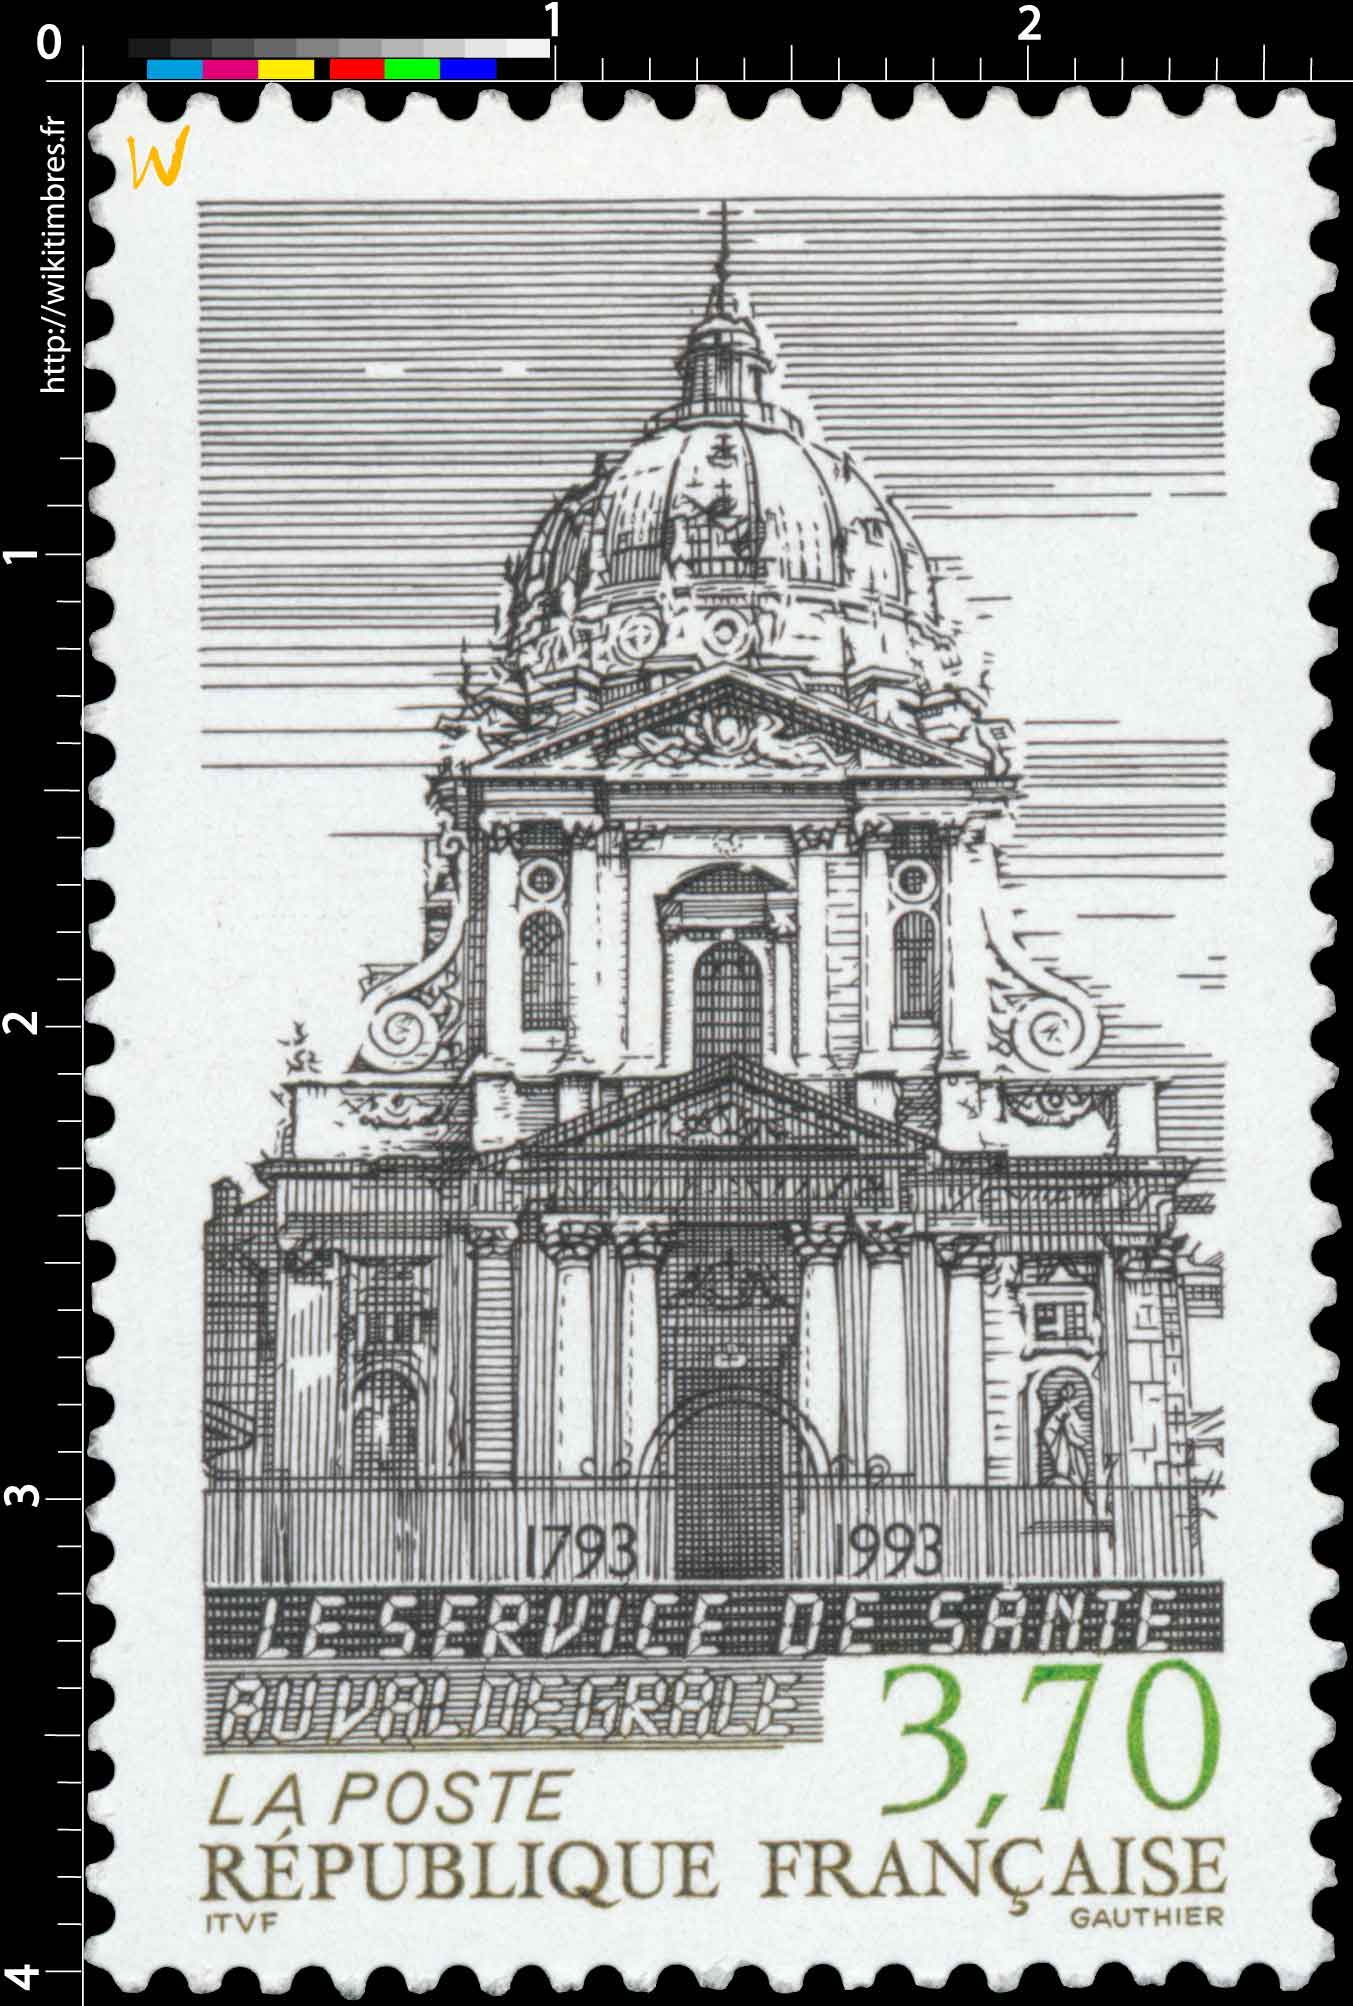 LE SERVICE DE SANTÉ AU VAL DE GRACE 1793-1993